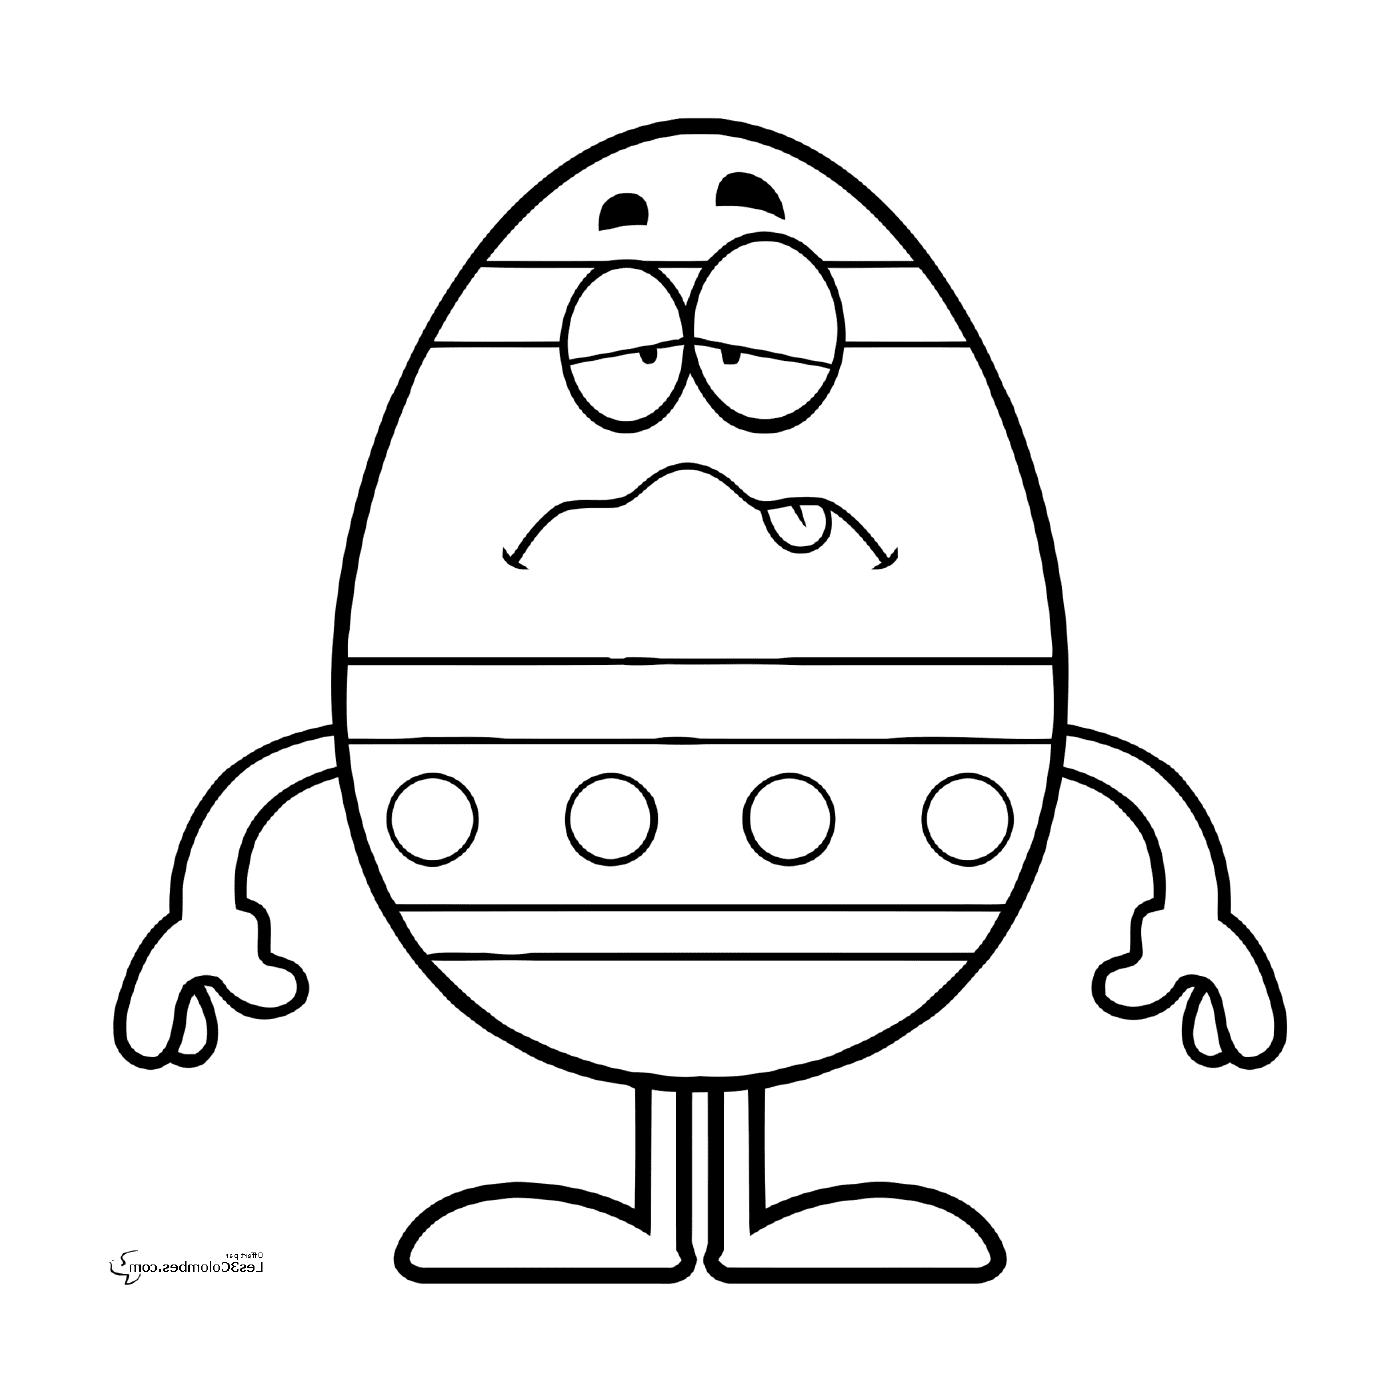  Pascua 196, un triste huevo de Pascua 